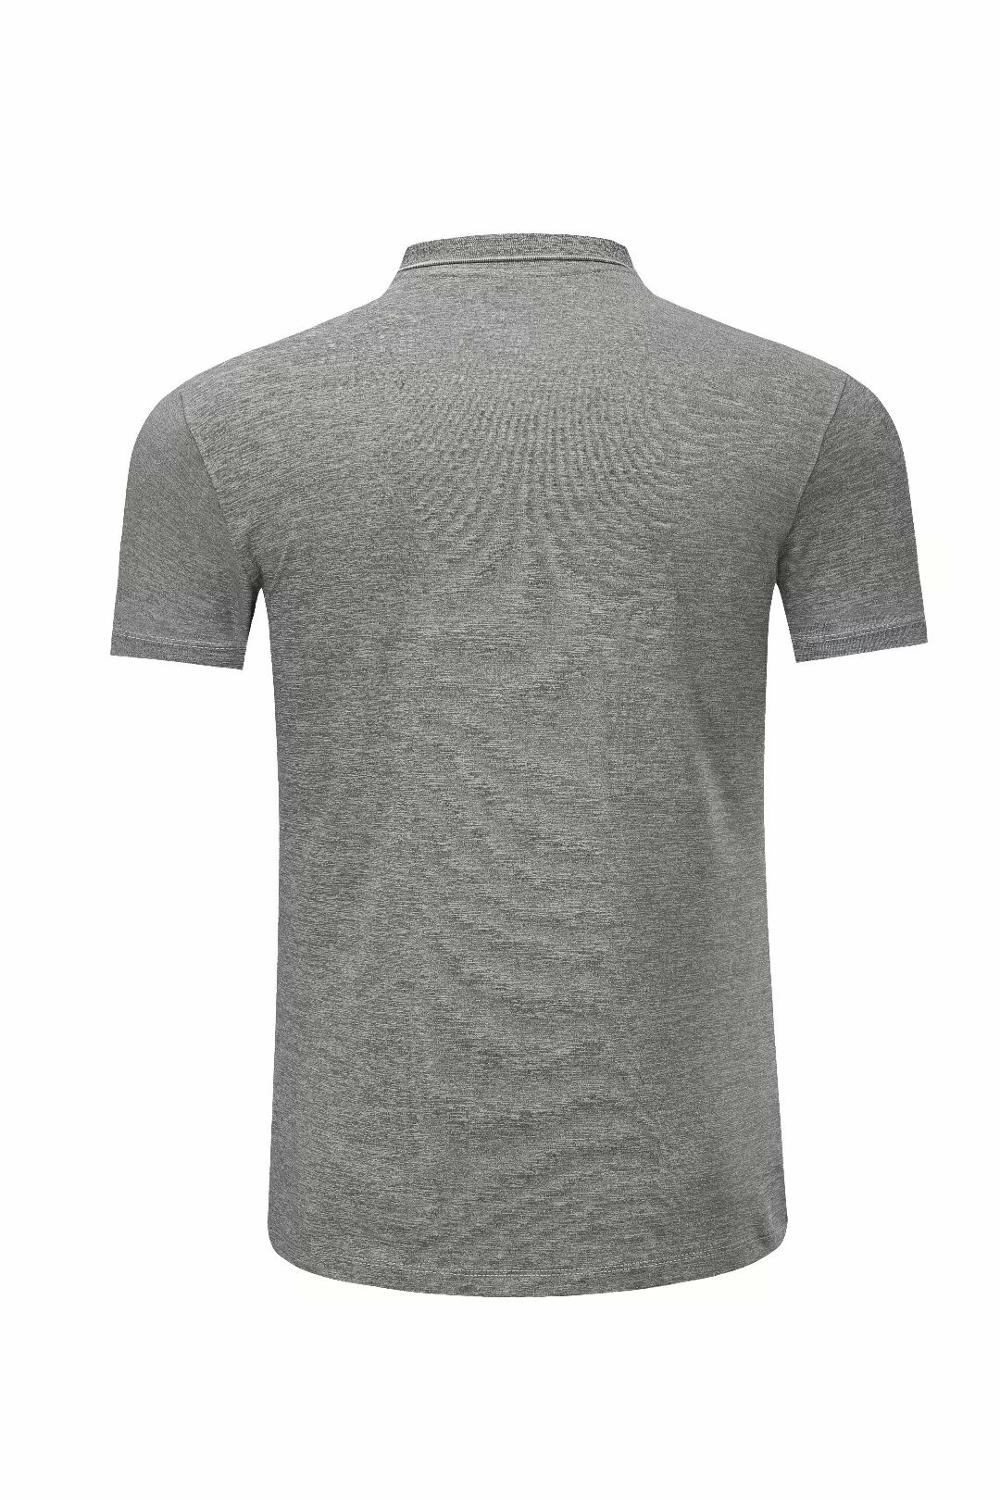 1808 grå træningst-shirt